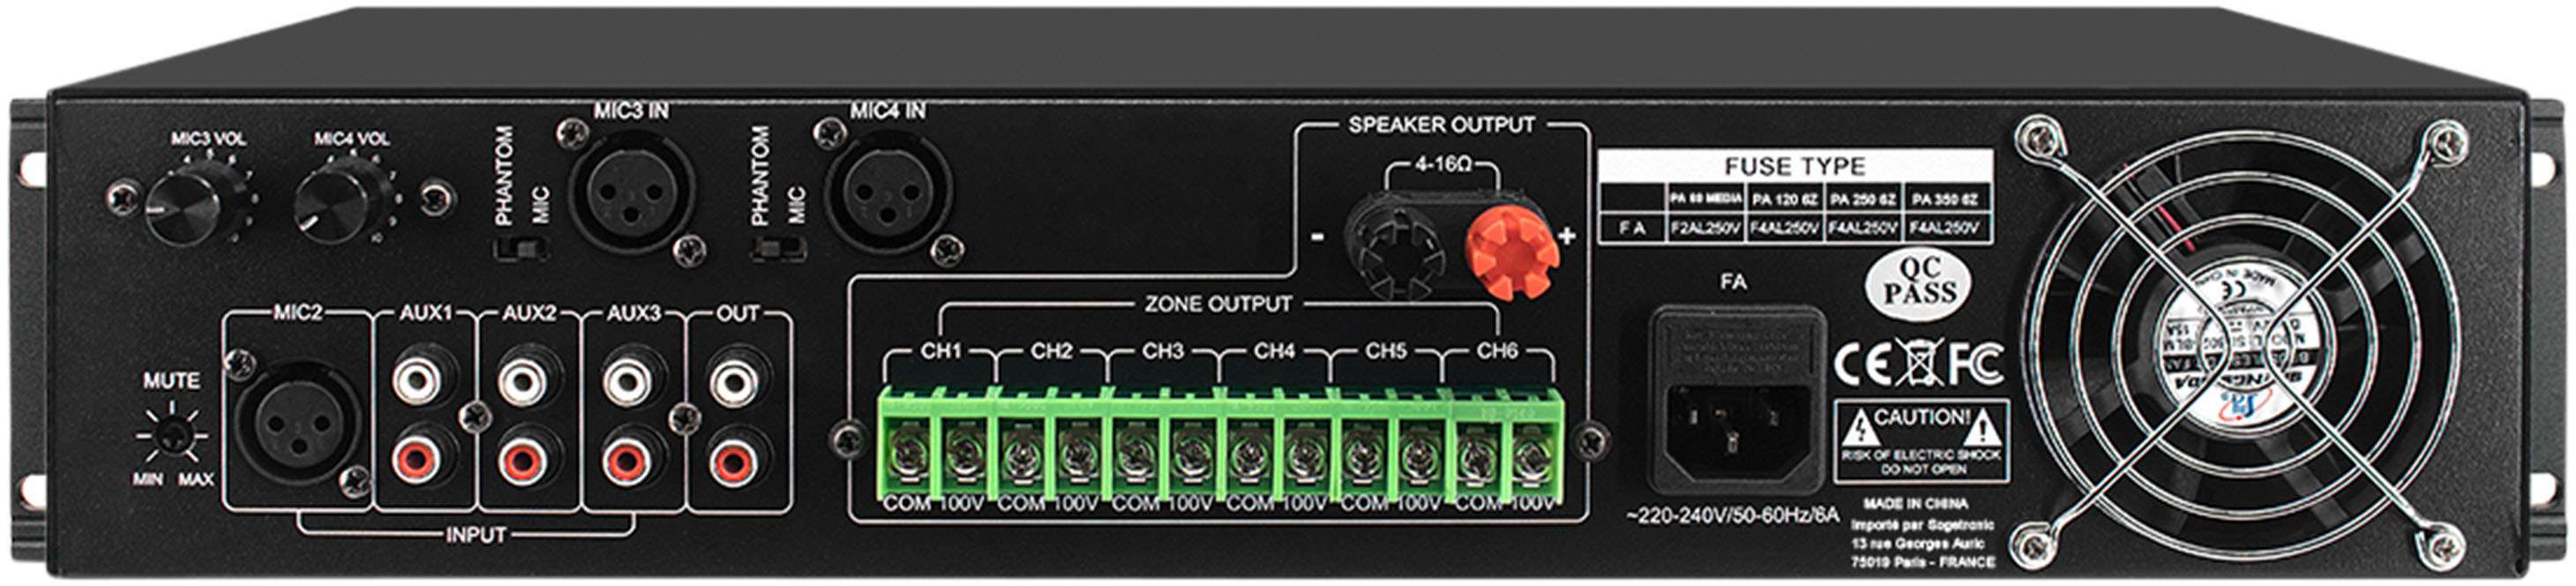 Definitive Audio Pa 250 6z - Etapa final de potencia de varios canales - Variation 1